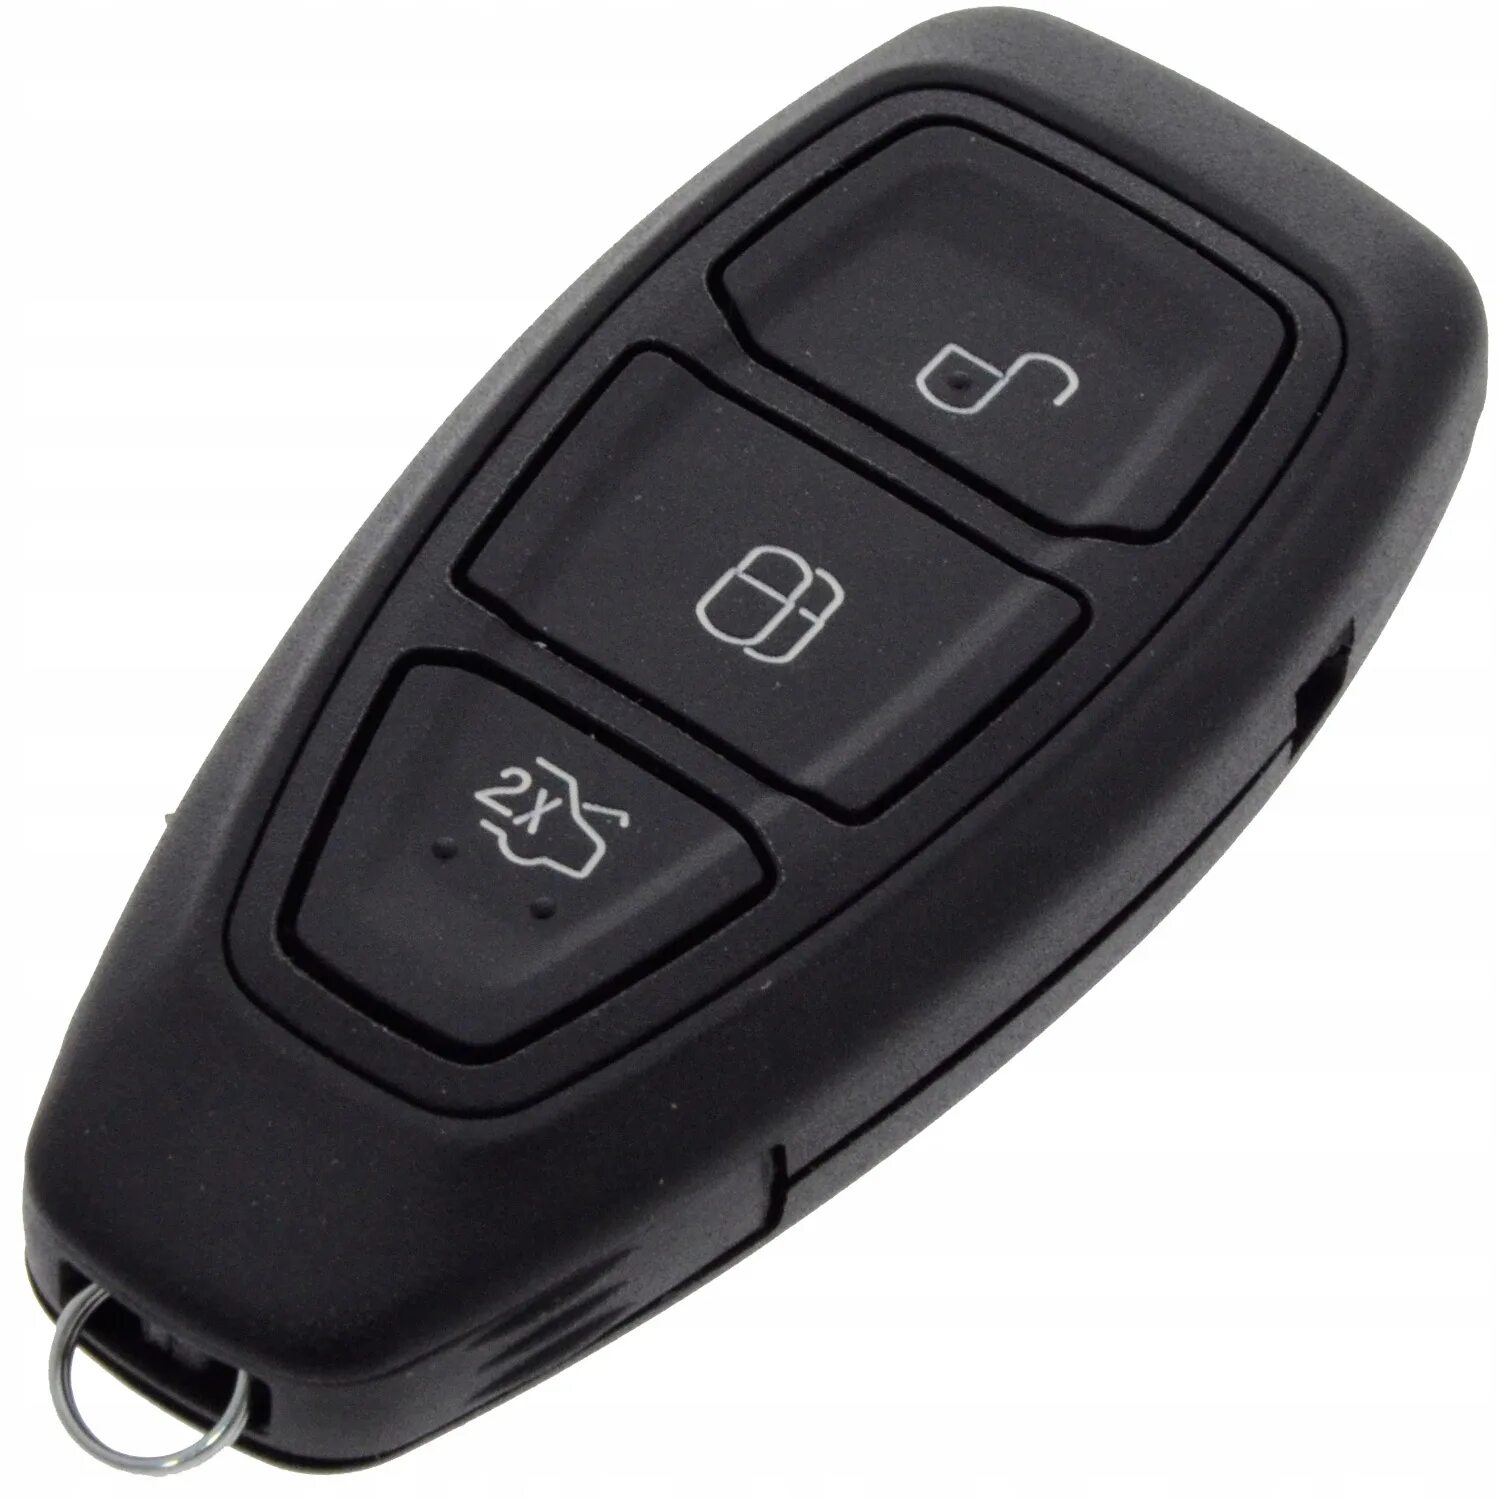 Ключ форда куга. Ключ Форд Куга. Ключ Форд Куга с автозапуском. Форд Куга ключ 5 кнопок. Ключ Куга 1.